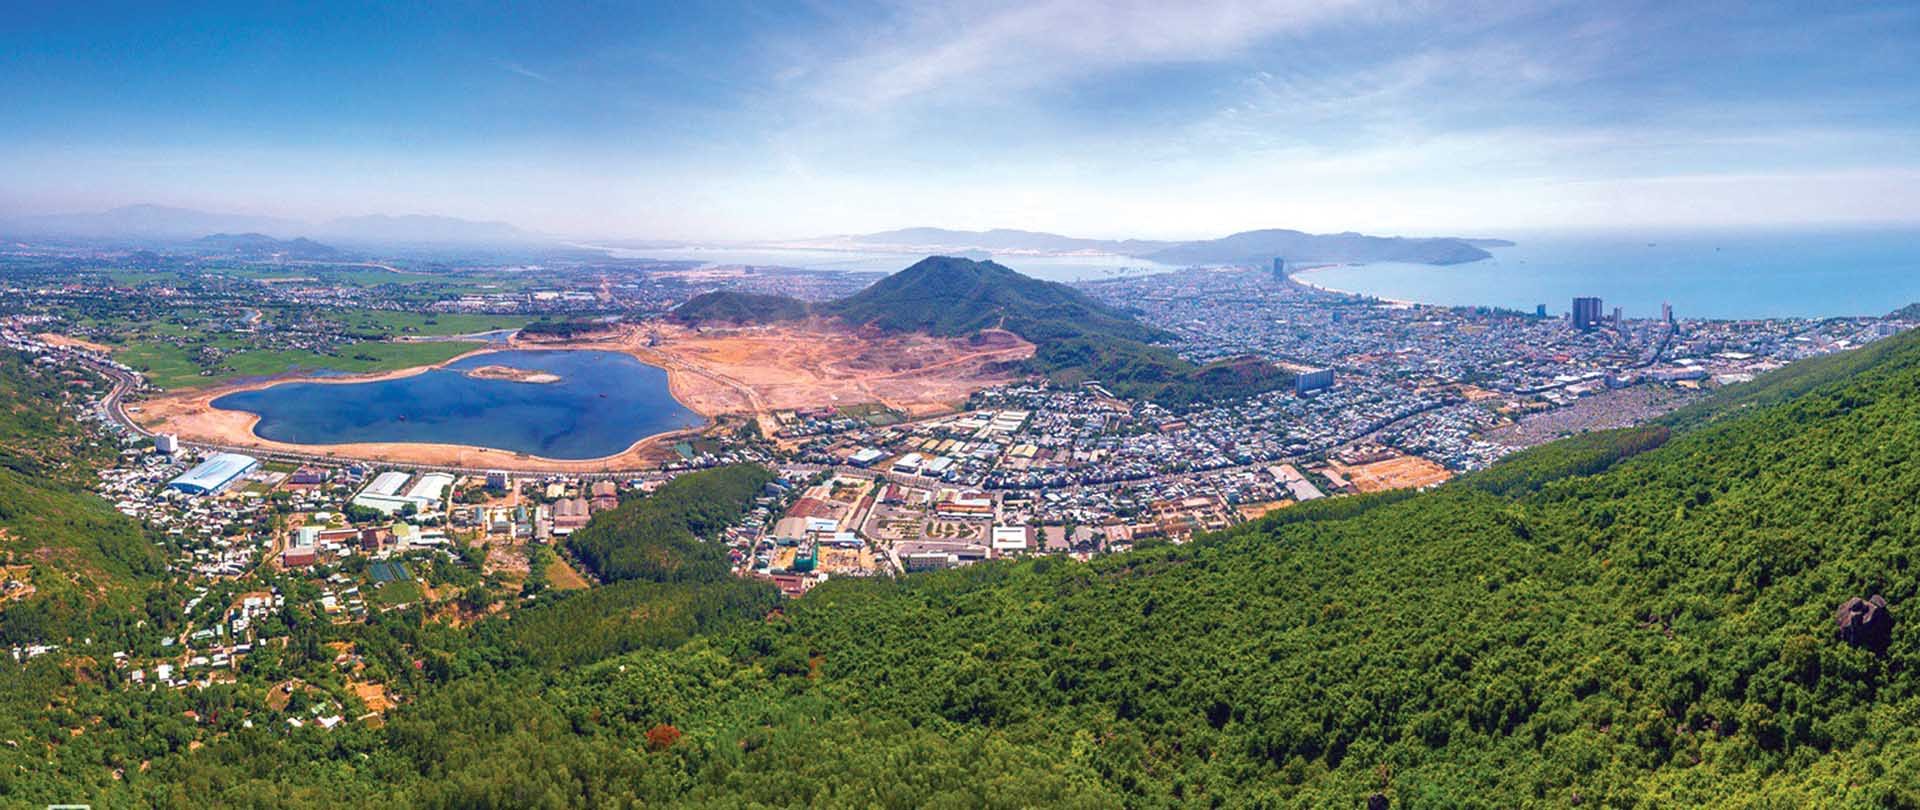 Thành phố biển Quy Nhơn nhìn từ khu vực núi Vũng Chùa.  (Ảnh: Nguyễn Tiến Trình)